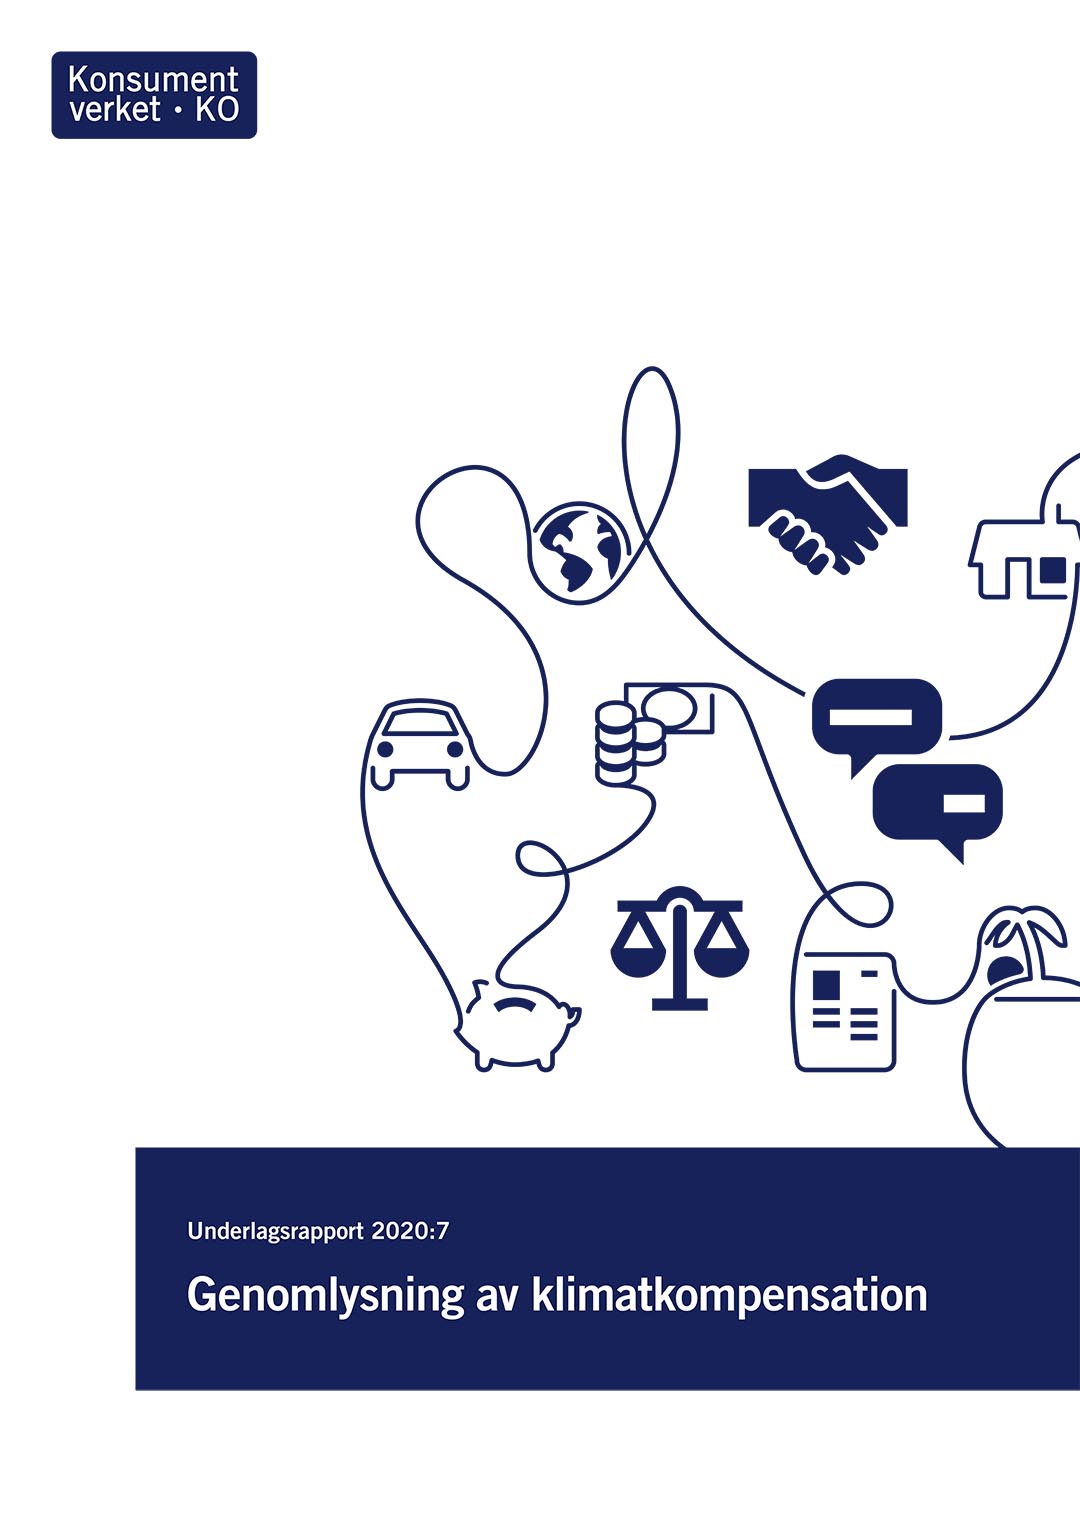 Underlagsrapport 2020:7 Genomlysning av klimatkompensation